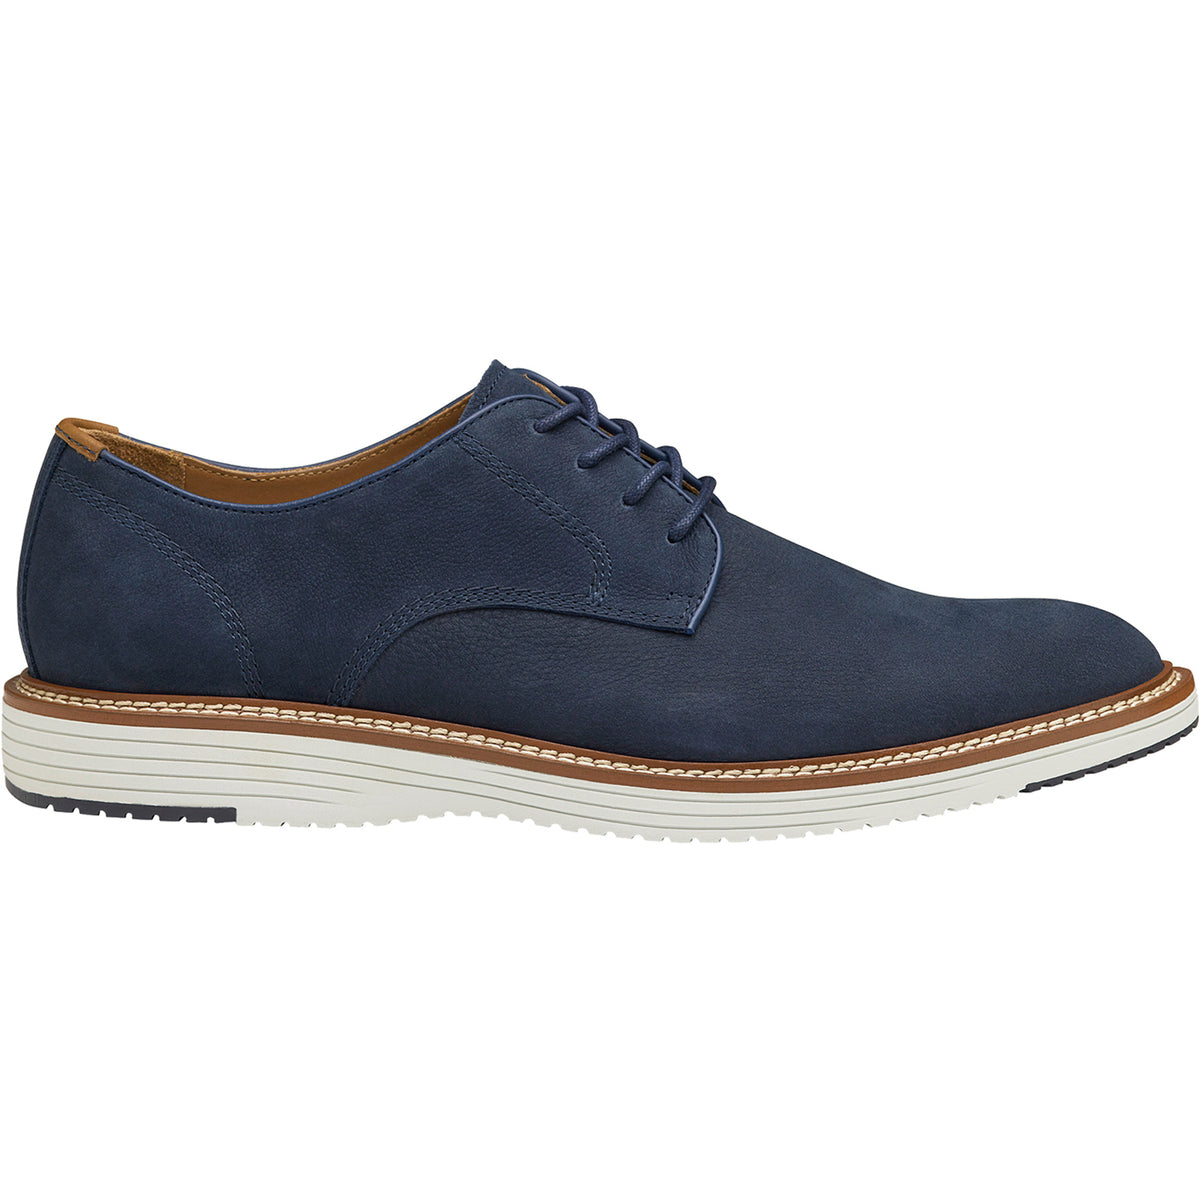 Johnston & Murphy Upton Plain Toe | Men's Dress Shoe | Footwear etc.